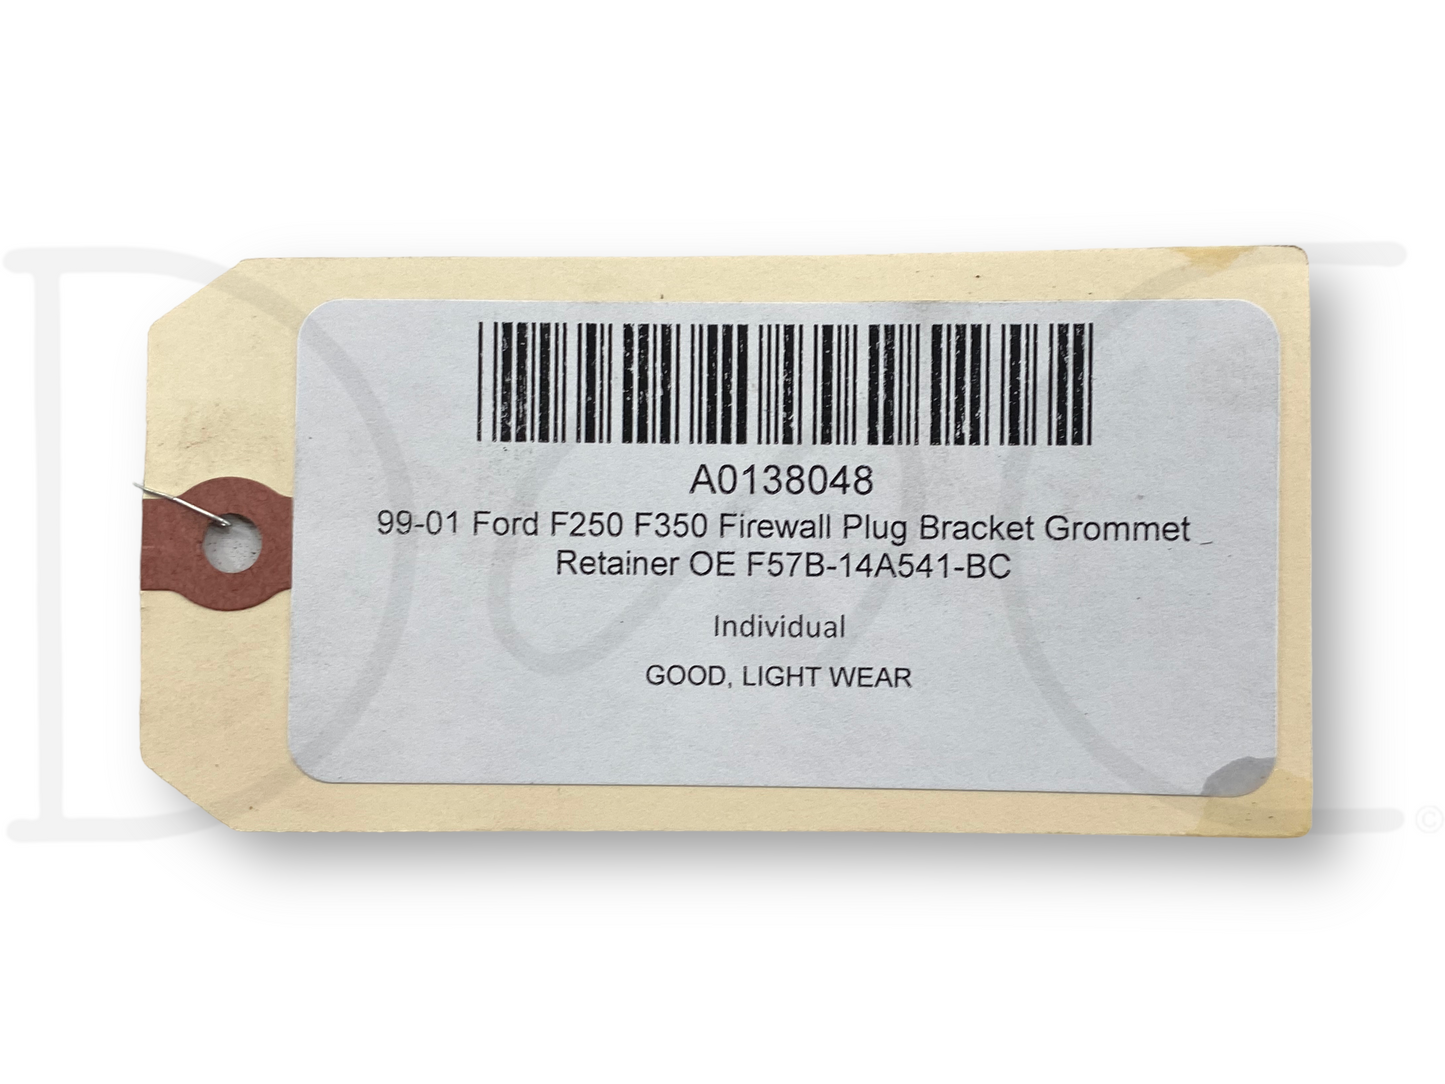 99-01 Ford F250 F350 Firewall Plug Bracket Grommet Retainer OE F57B-14A541-BC